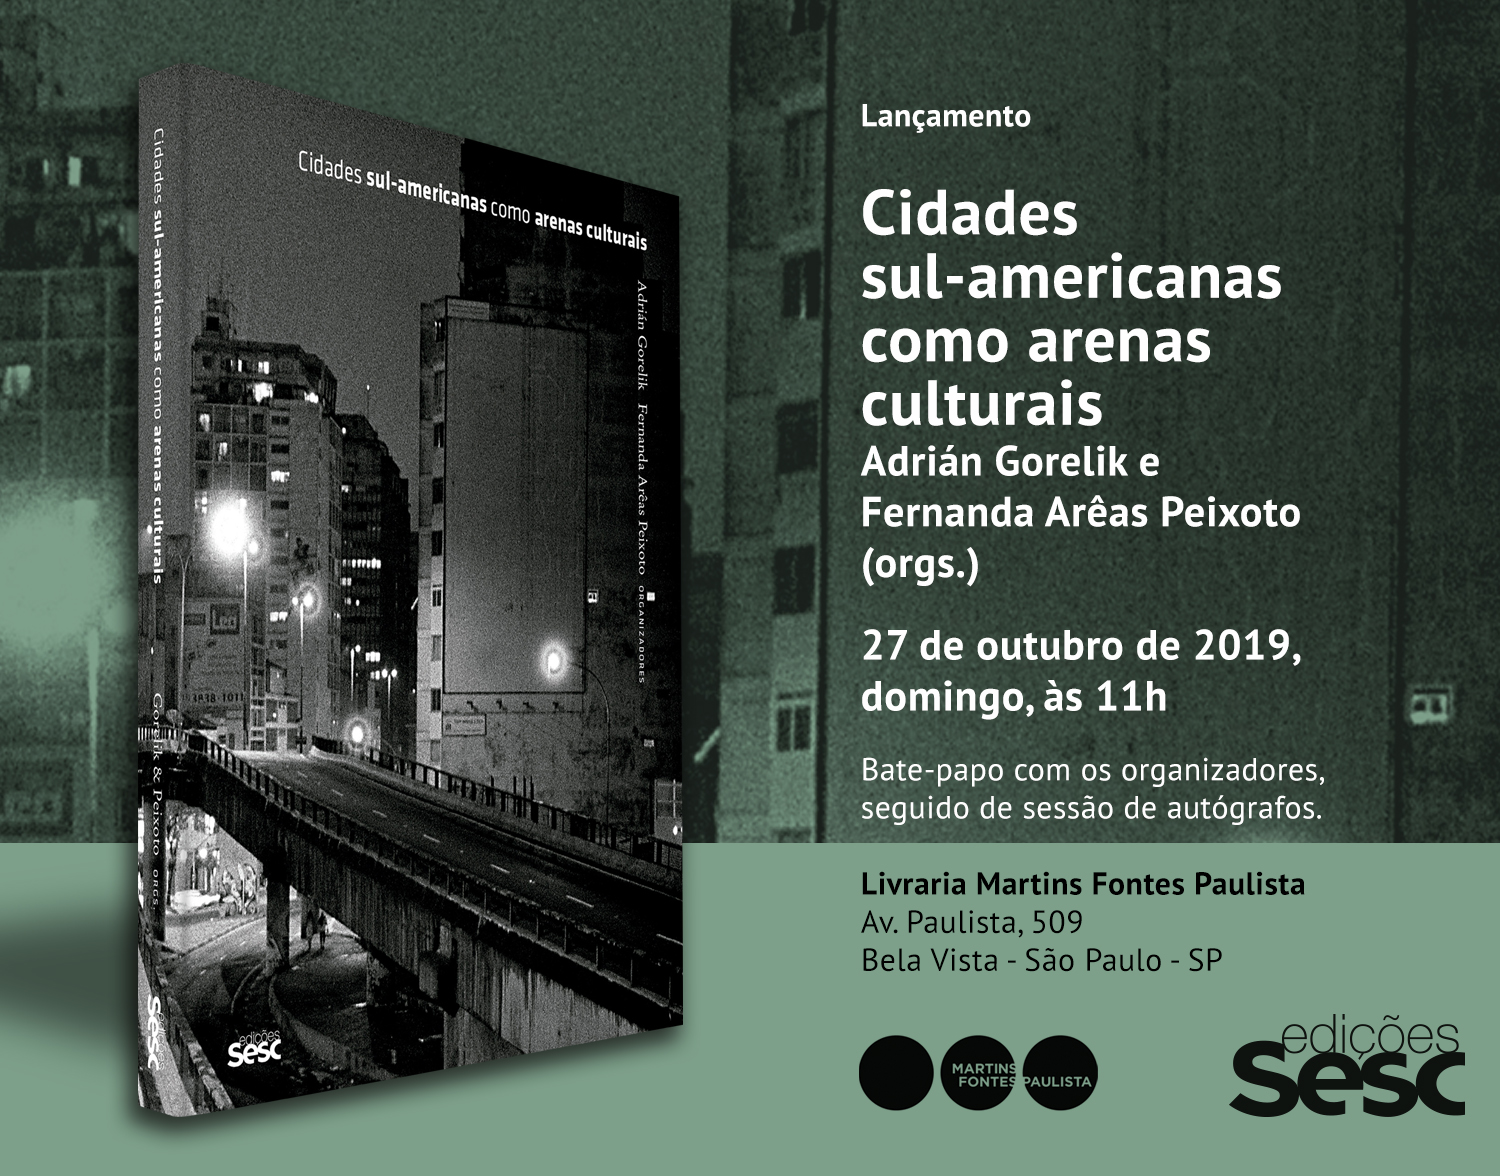 Cidades sul-americanas como arenas culturais